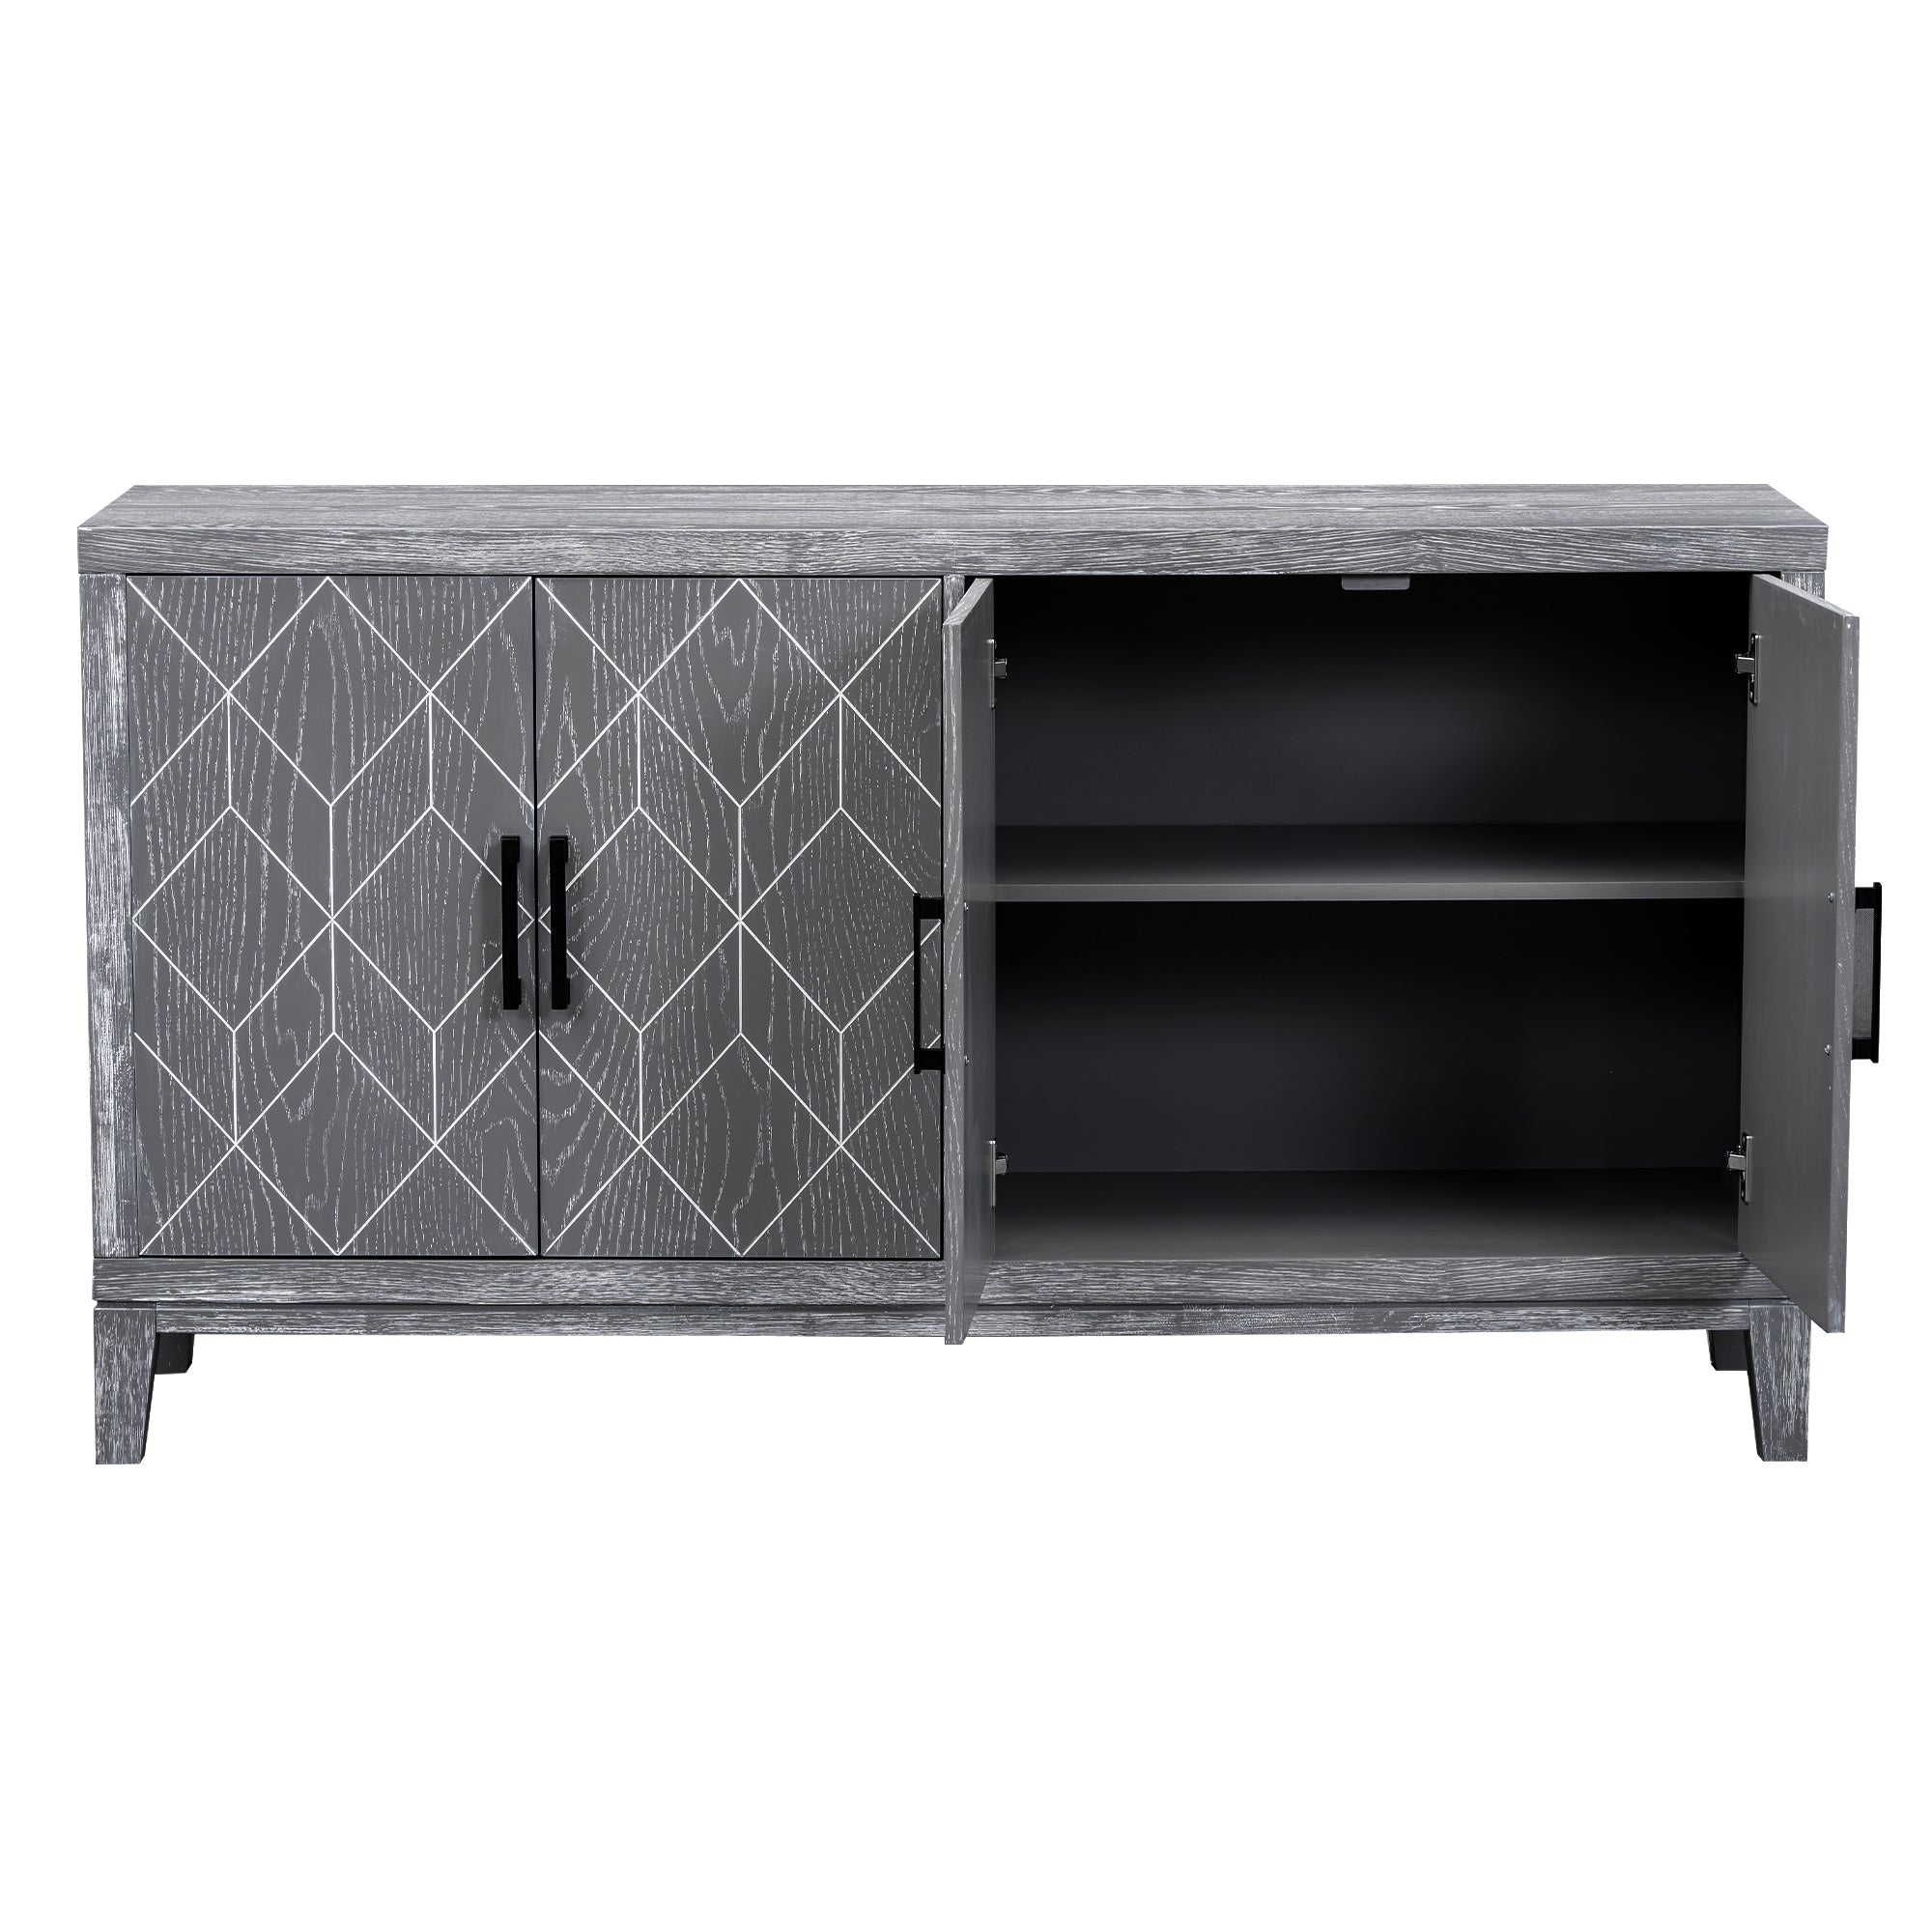 4 door Retro Sideboard with Adjustable Shelves light gray-mdf